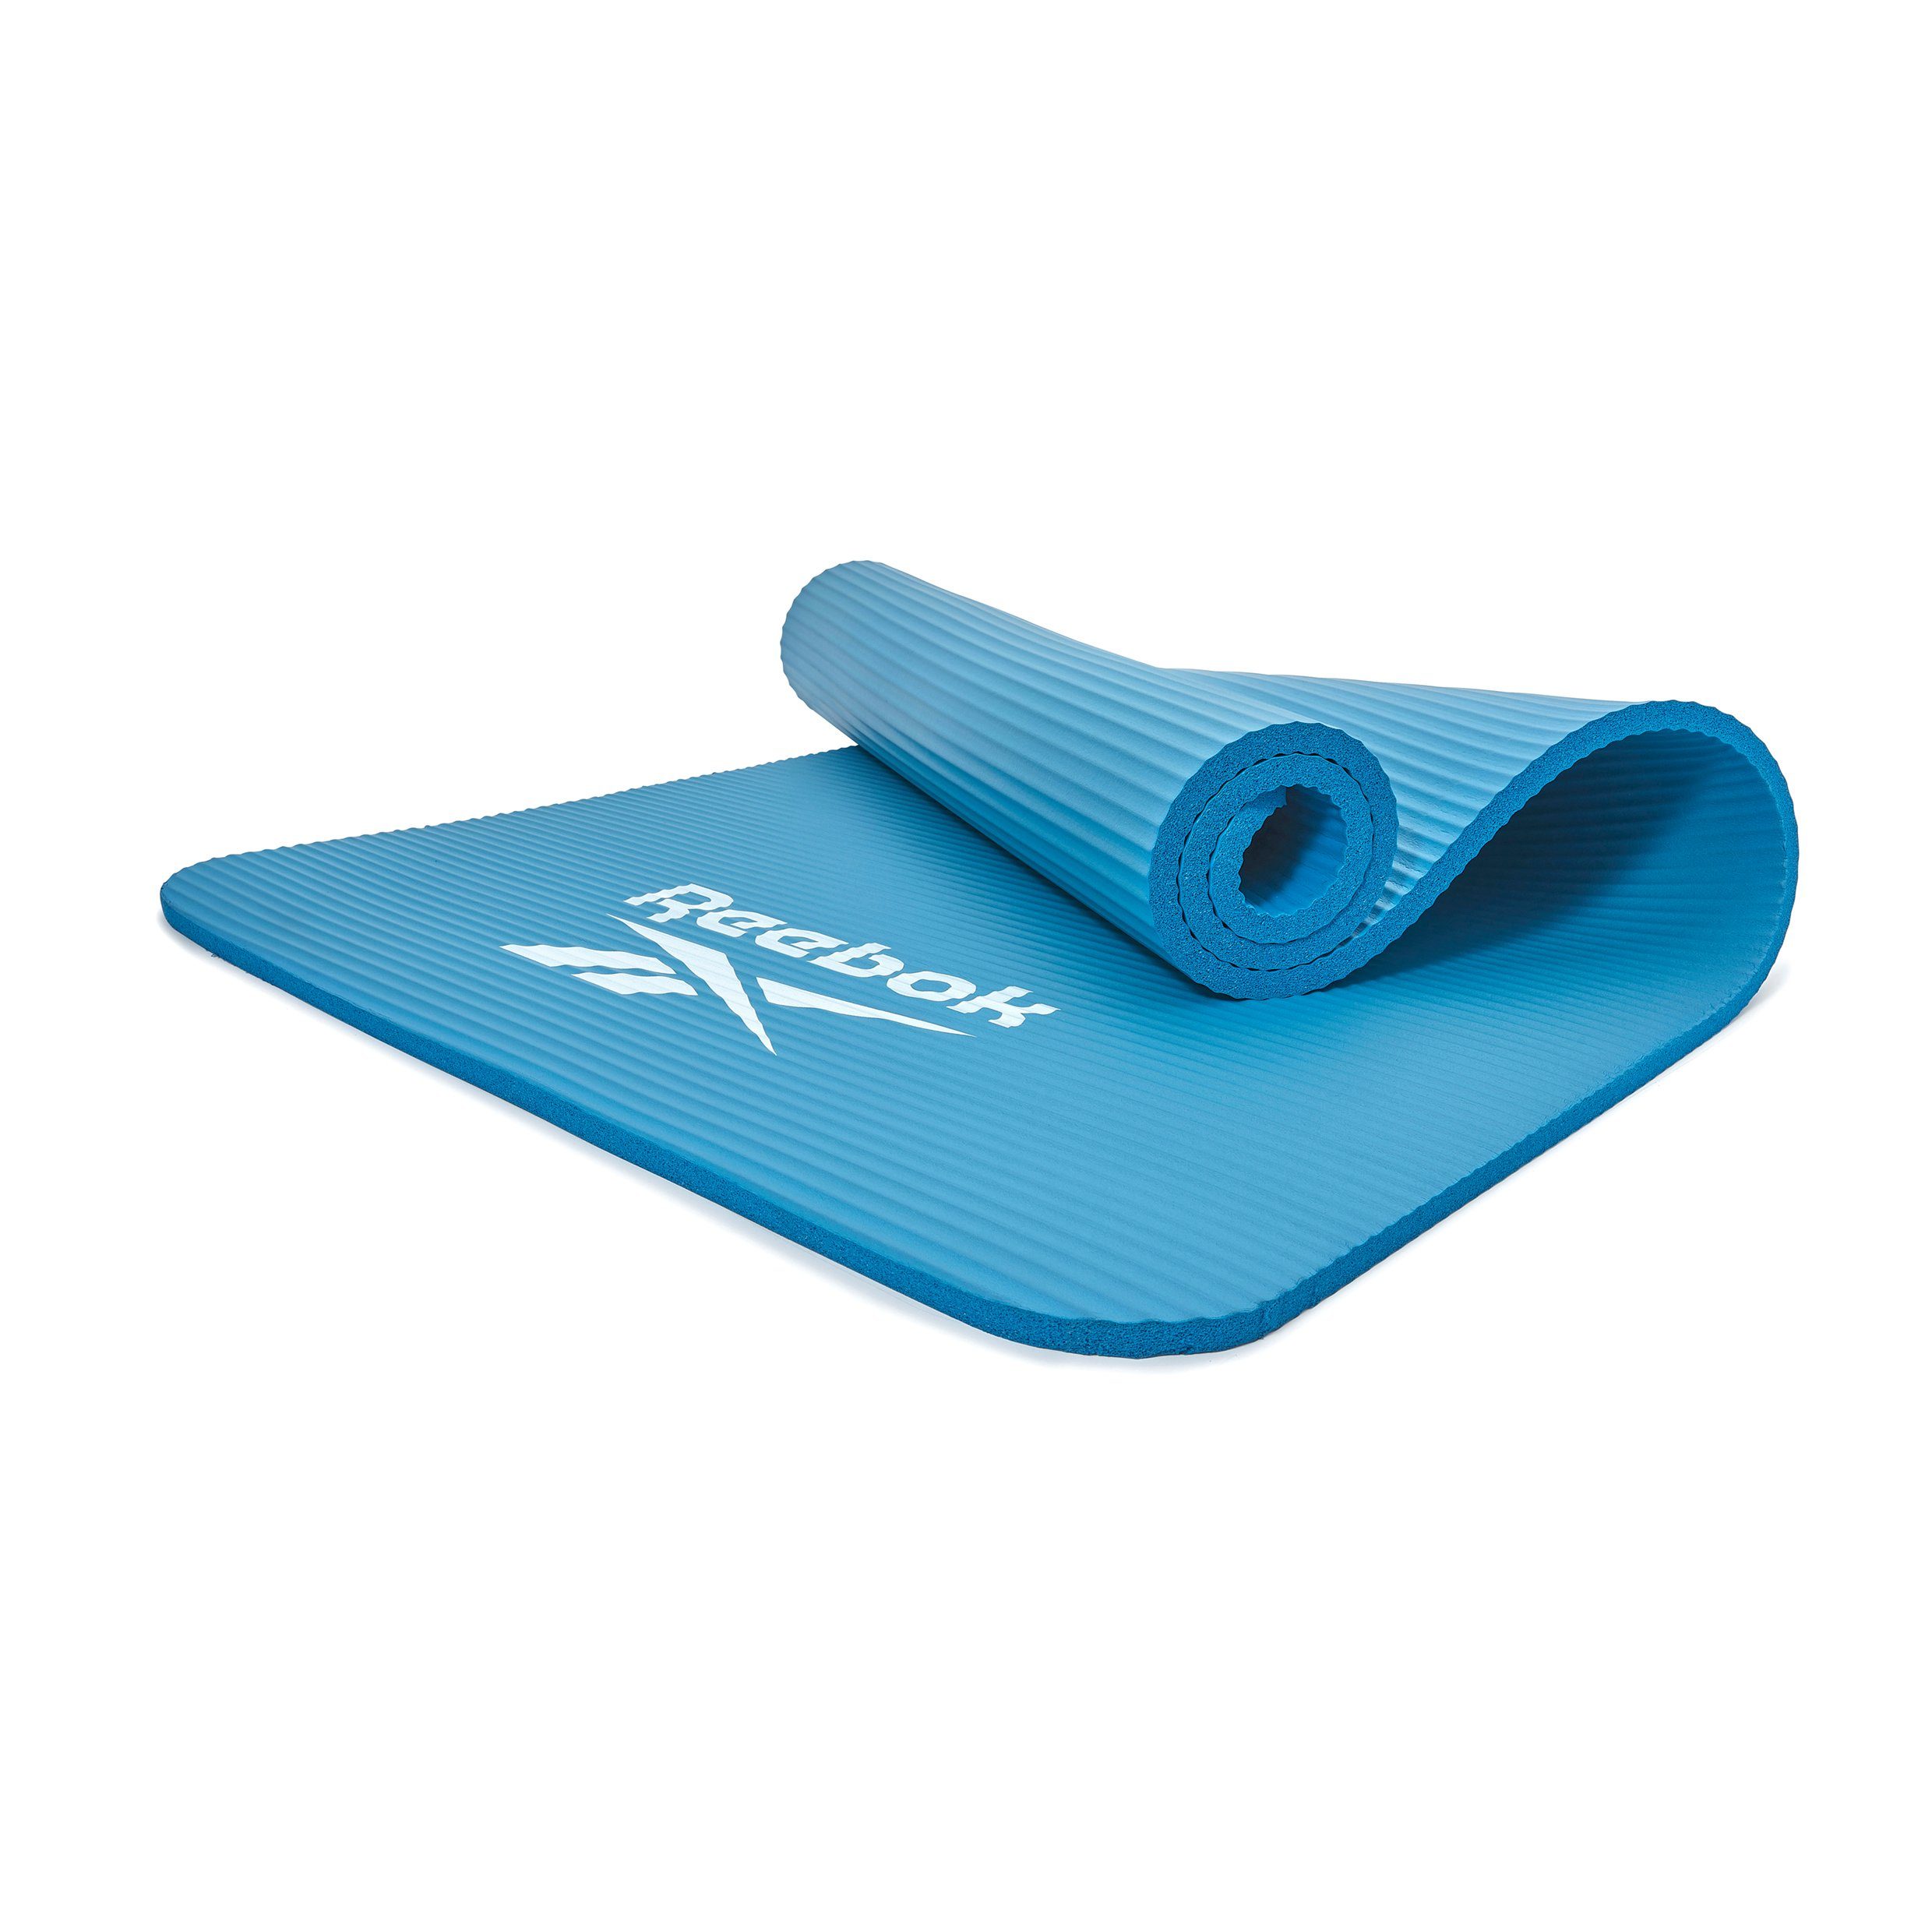 Rutschfeste blau Reebok 15mm, Fitness-/Trainingsmatte, Reebok Oberfläche Fitnessmatte